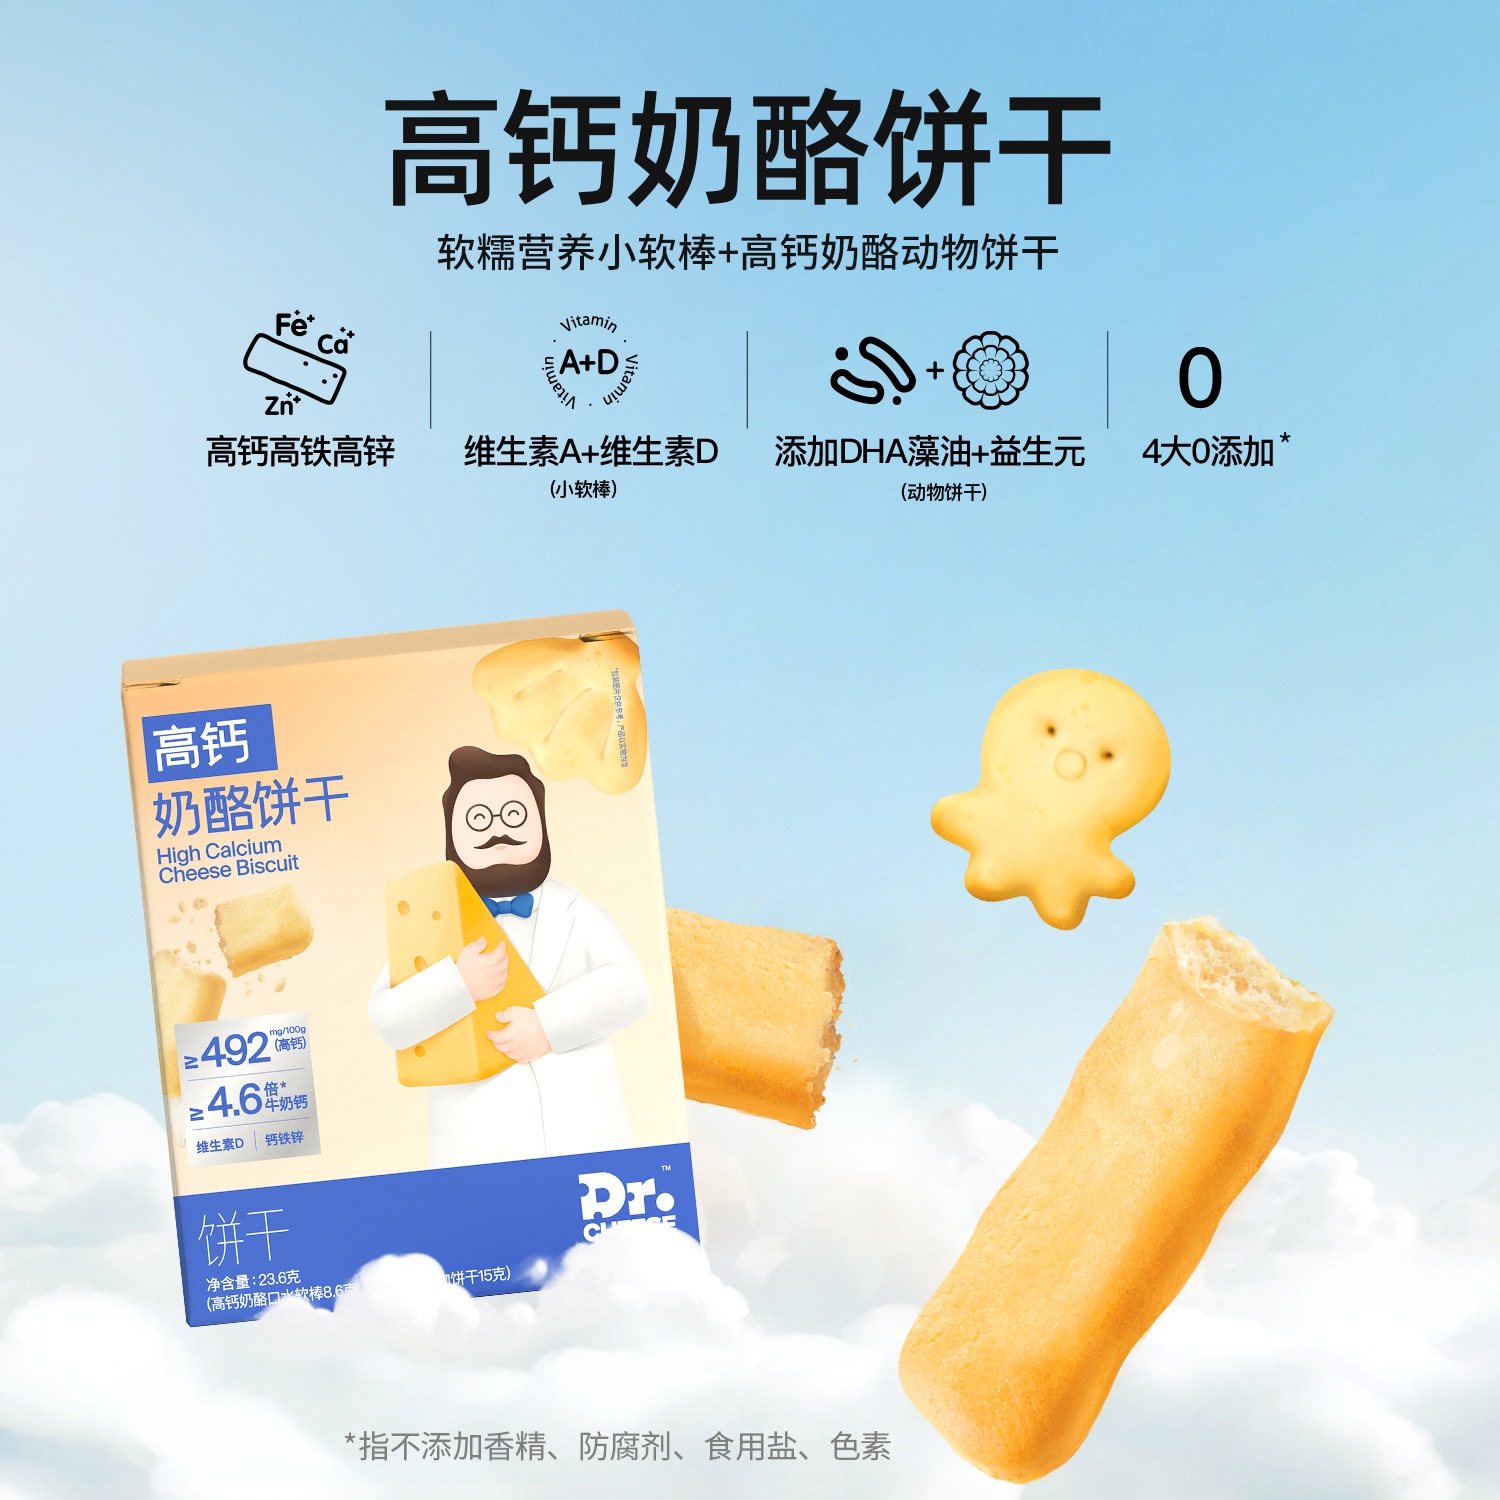 【推荐】奶酪博士高钙奶酪动物饼干宝宝营养零食尝鲜盒